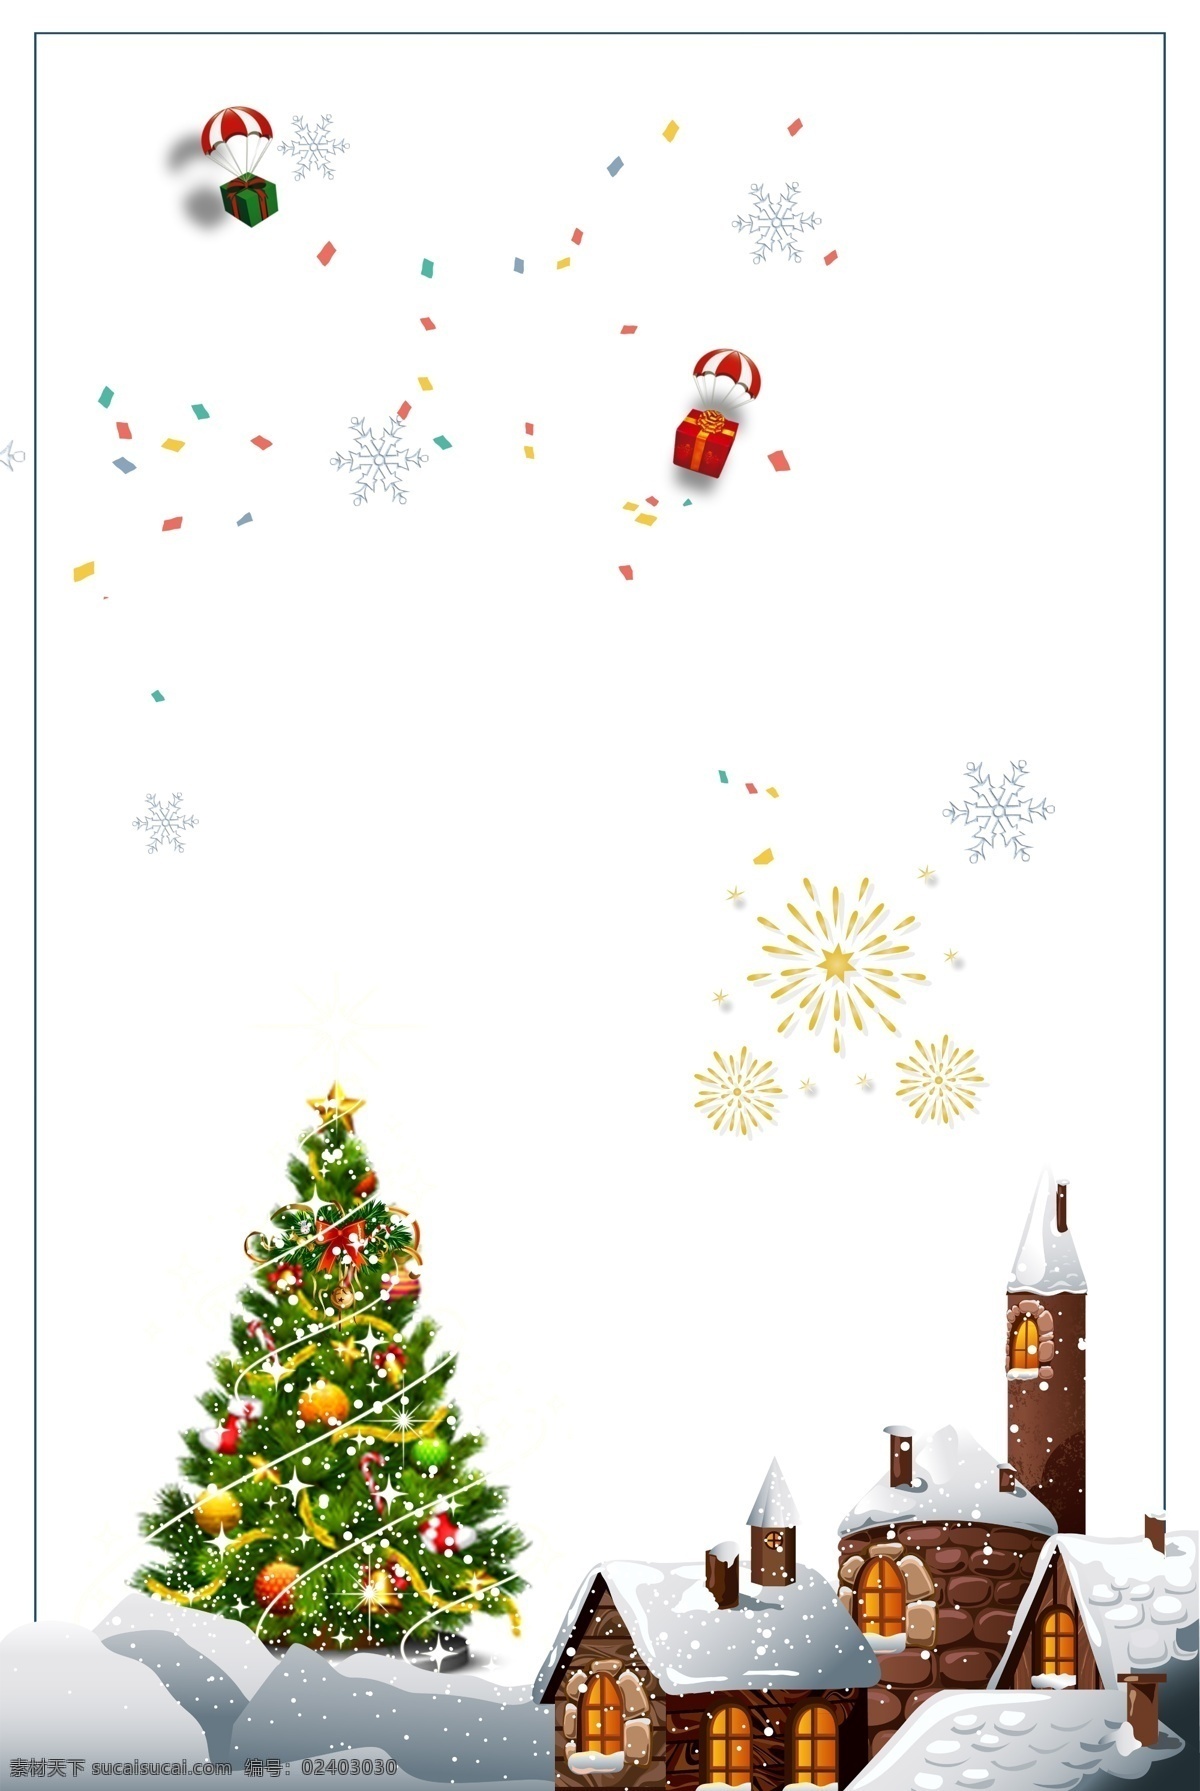 简约 卡通 圣诞节 狂欢 海报 背景 图 圣诞树 冬季 边框 礼盒 圣诞节快乐 平安夜 圣诞礼物 棒棒糖 糖果 广告背景